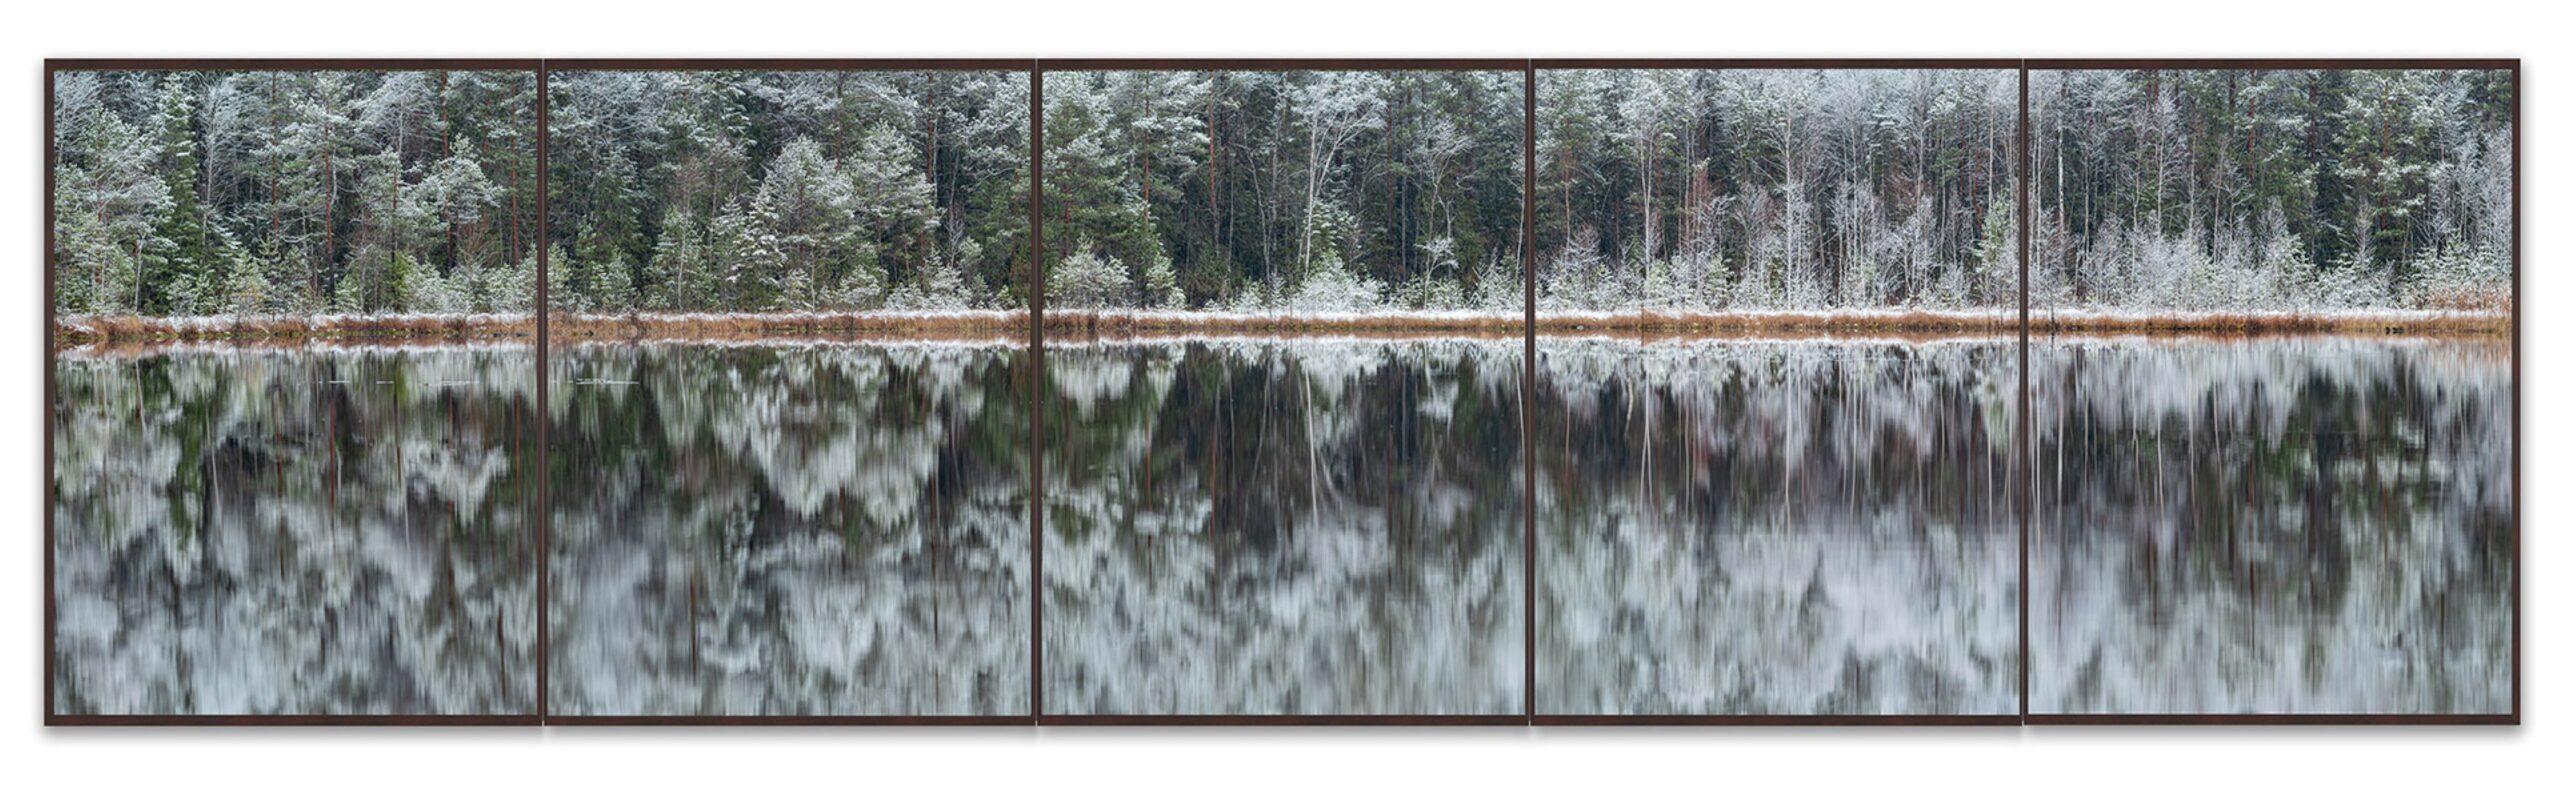 La Forêt-Noire 007 de Bernhard Lang - Photographie de paysage, arbres, neige en vente 2